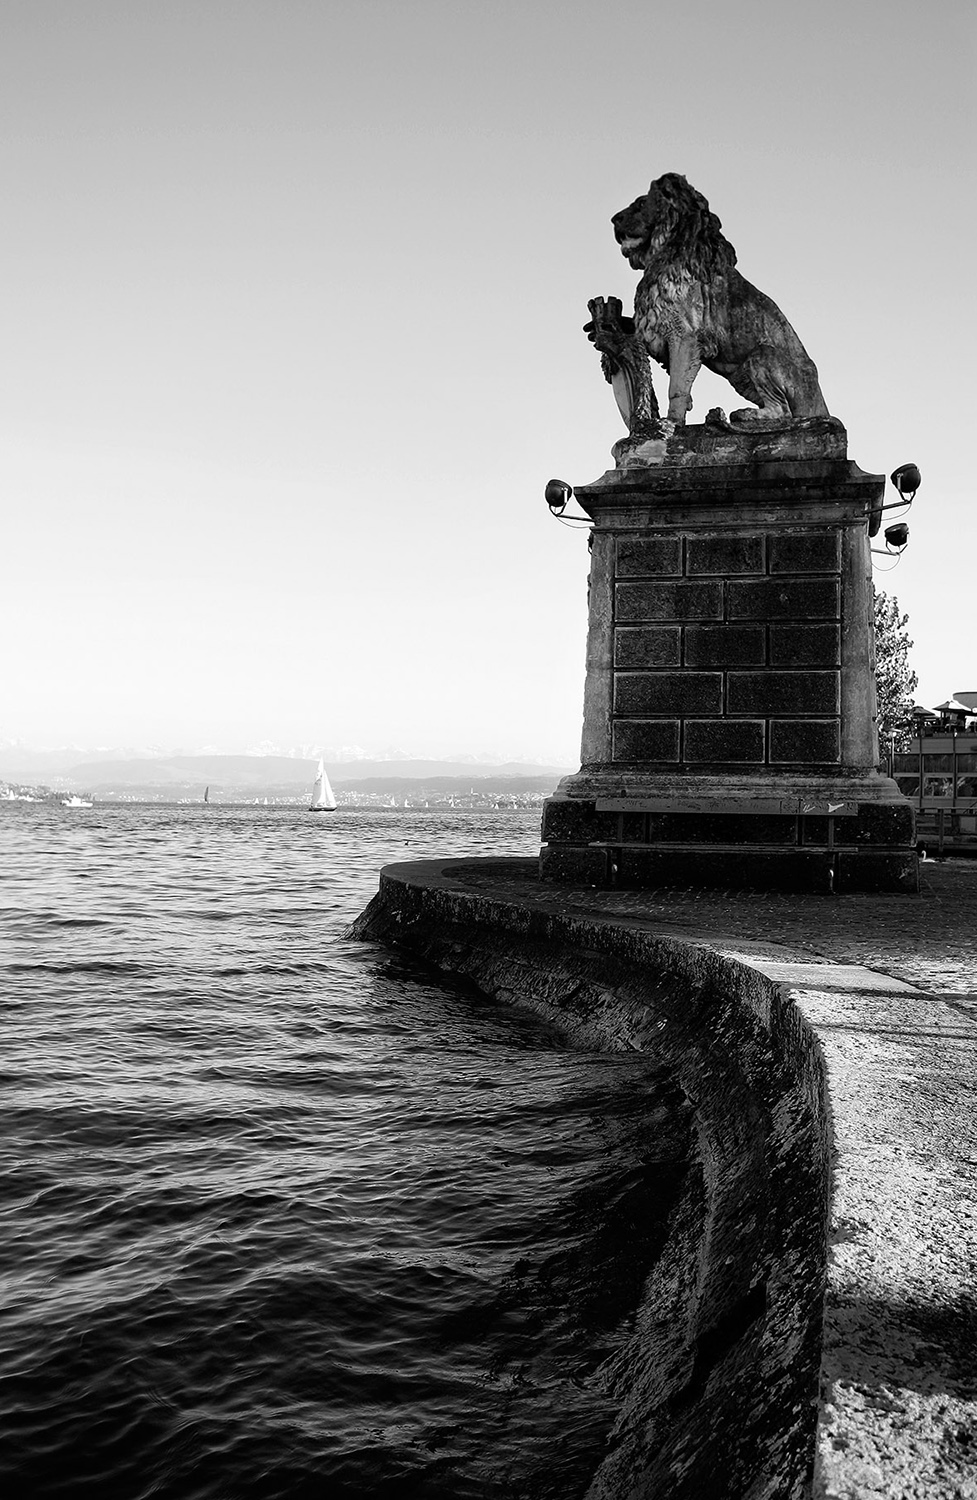 Lake Zurich, Zurich, Switzerland. Photography Justin Hession